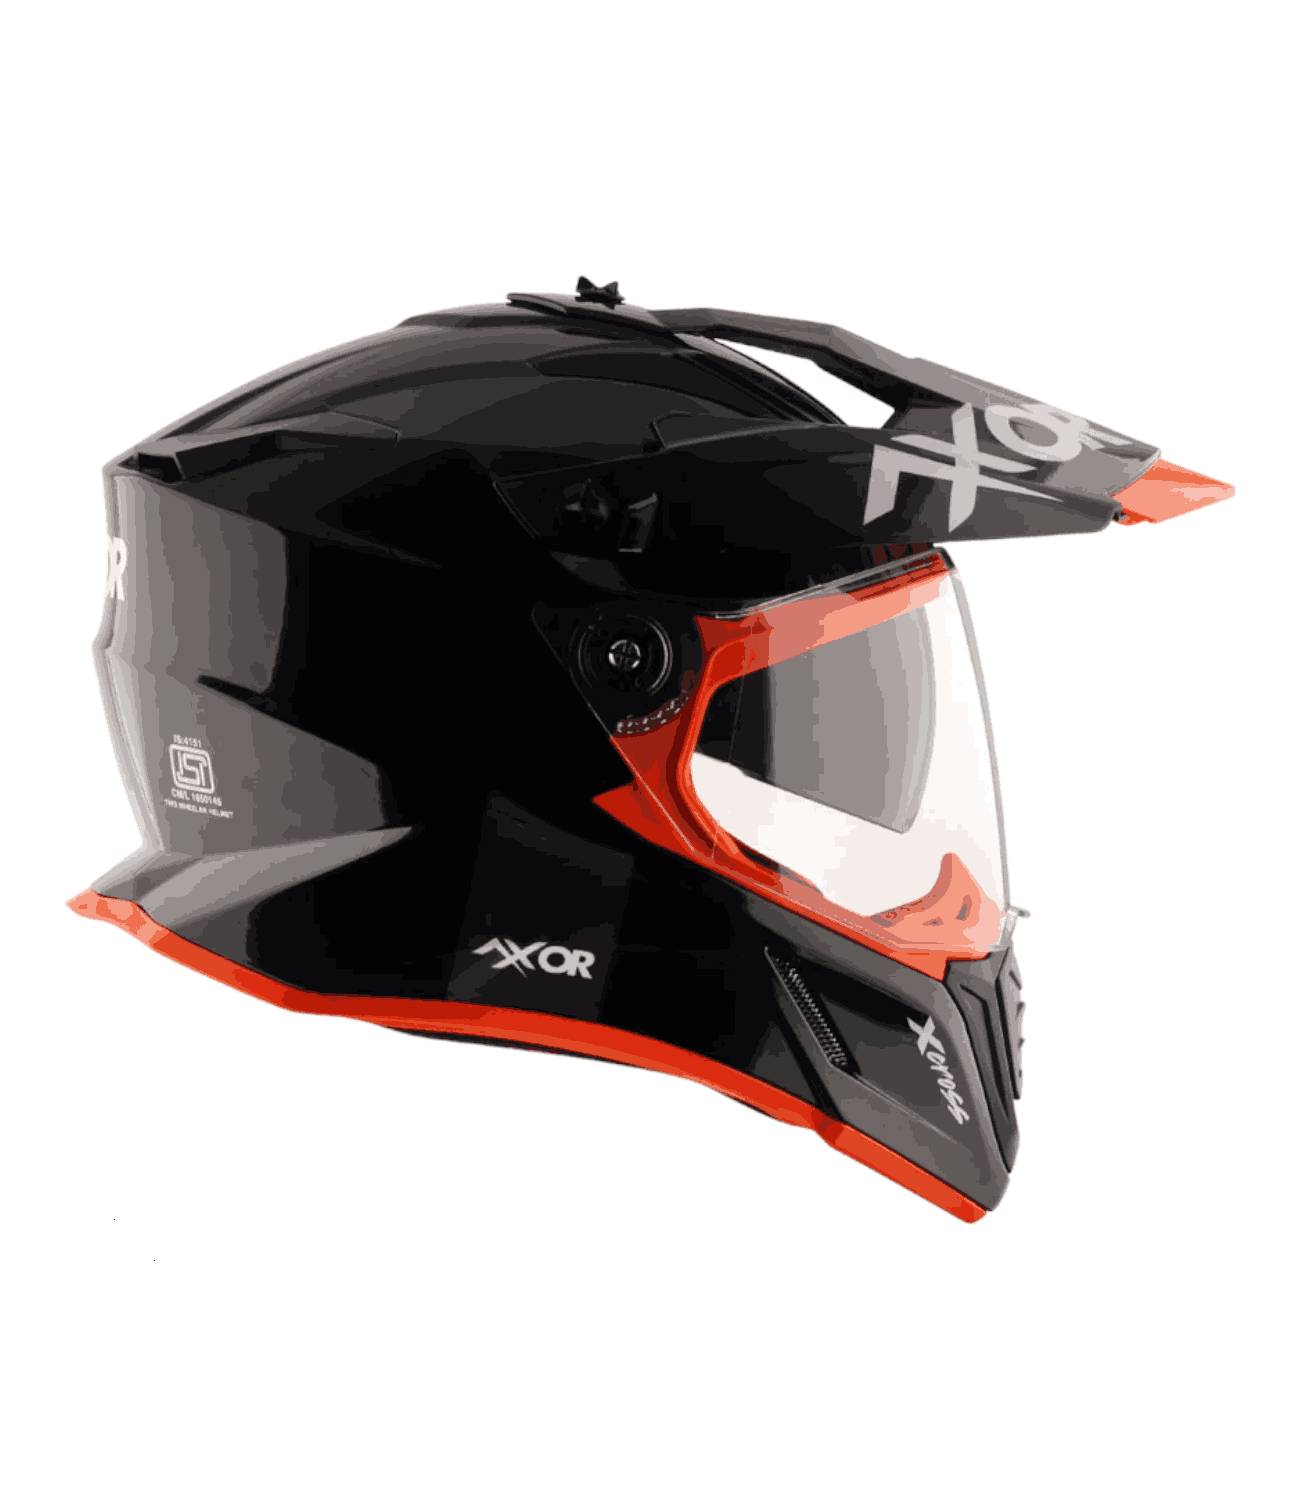 Axor X-Cross Dual Visor Helmet Black Orange